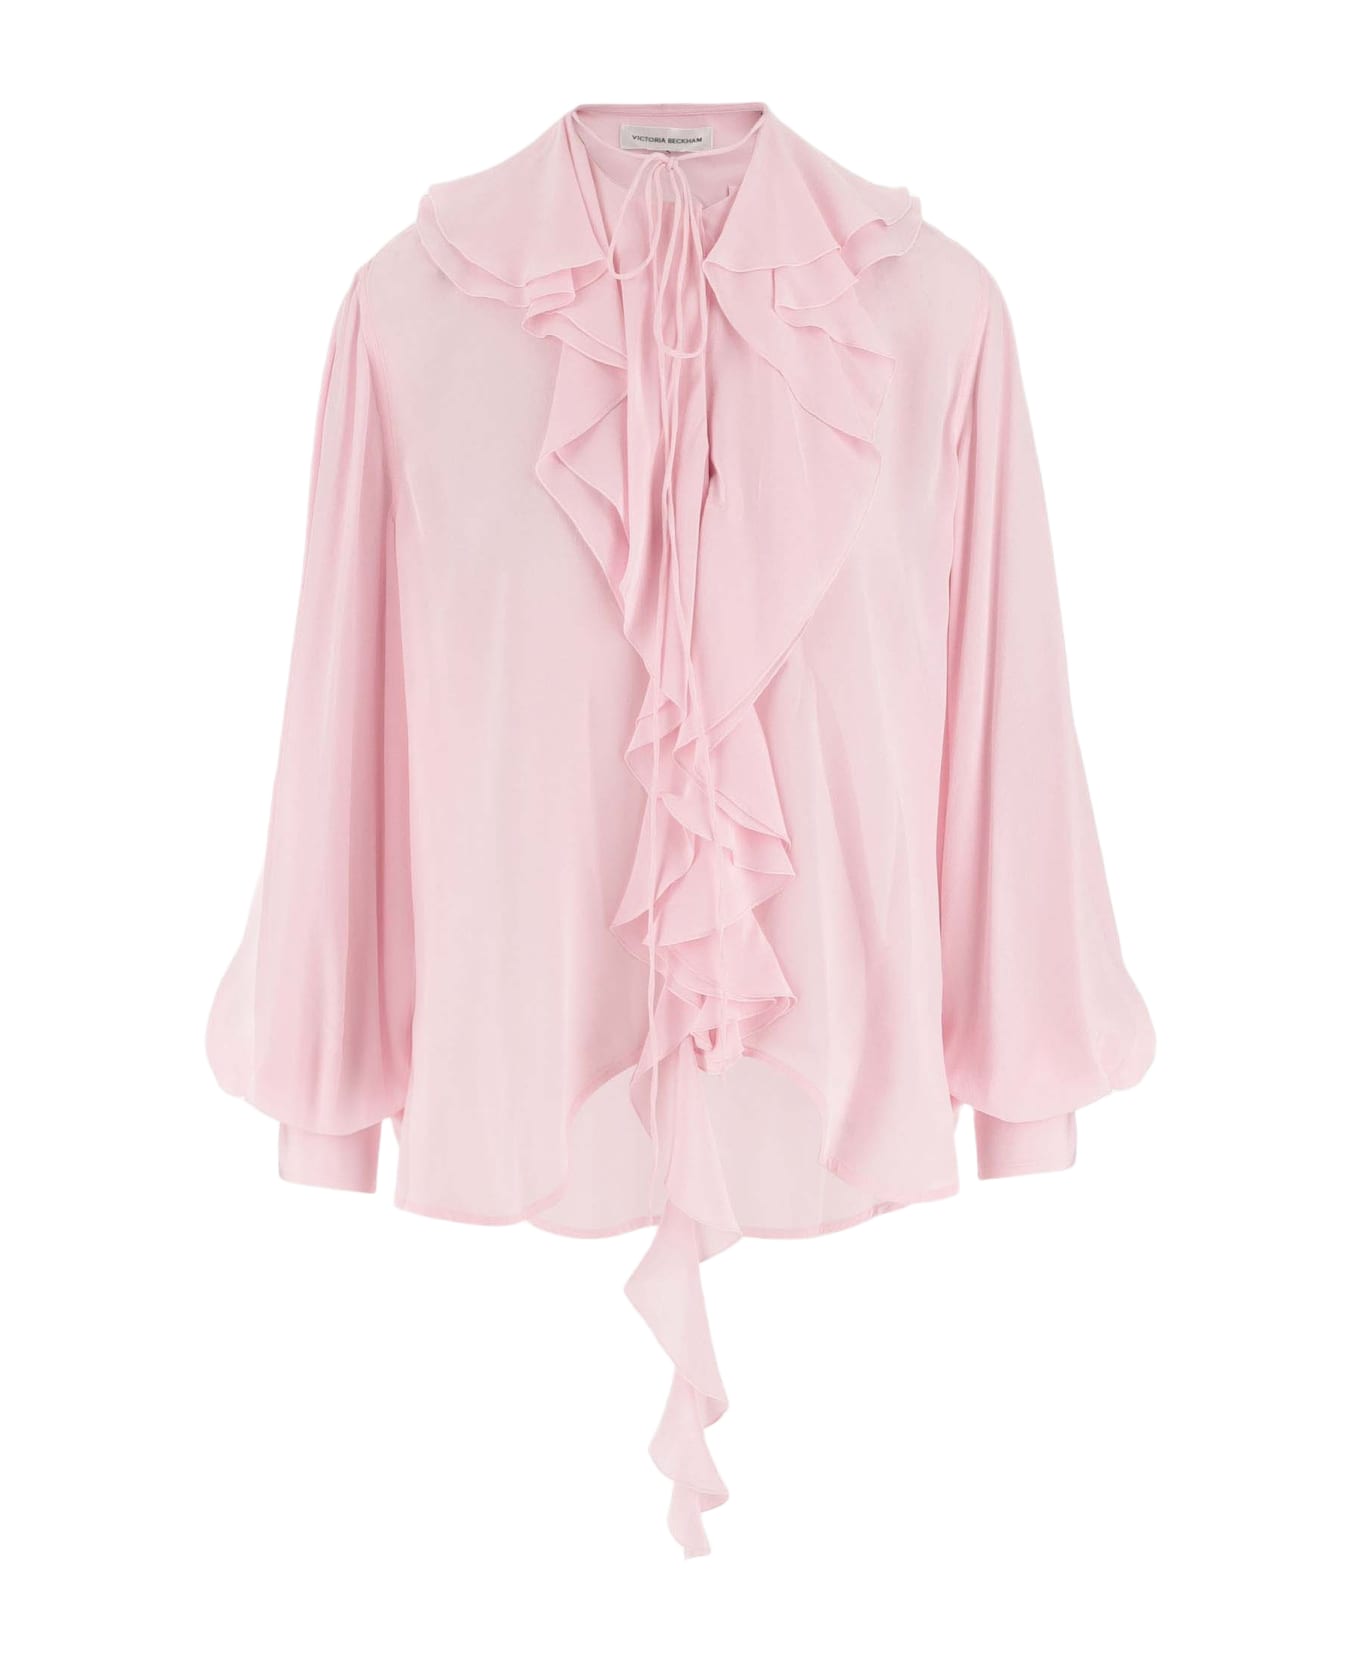 Victoria Beckham Silk Shirt With Ruffles - Pink